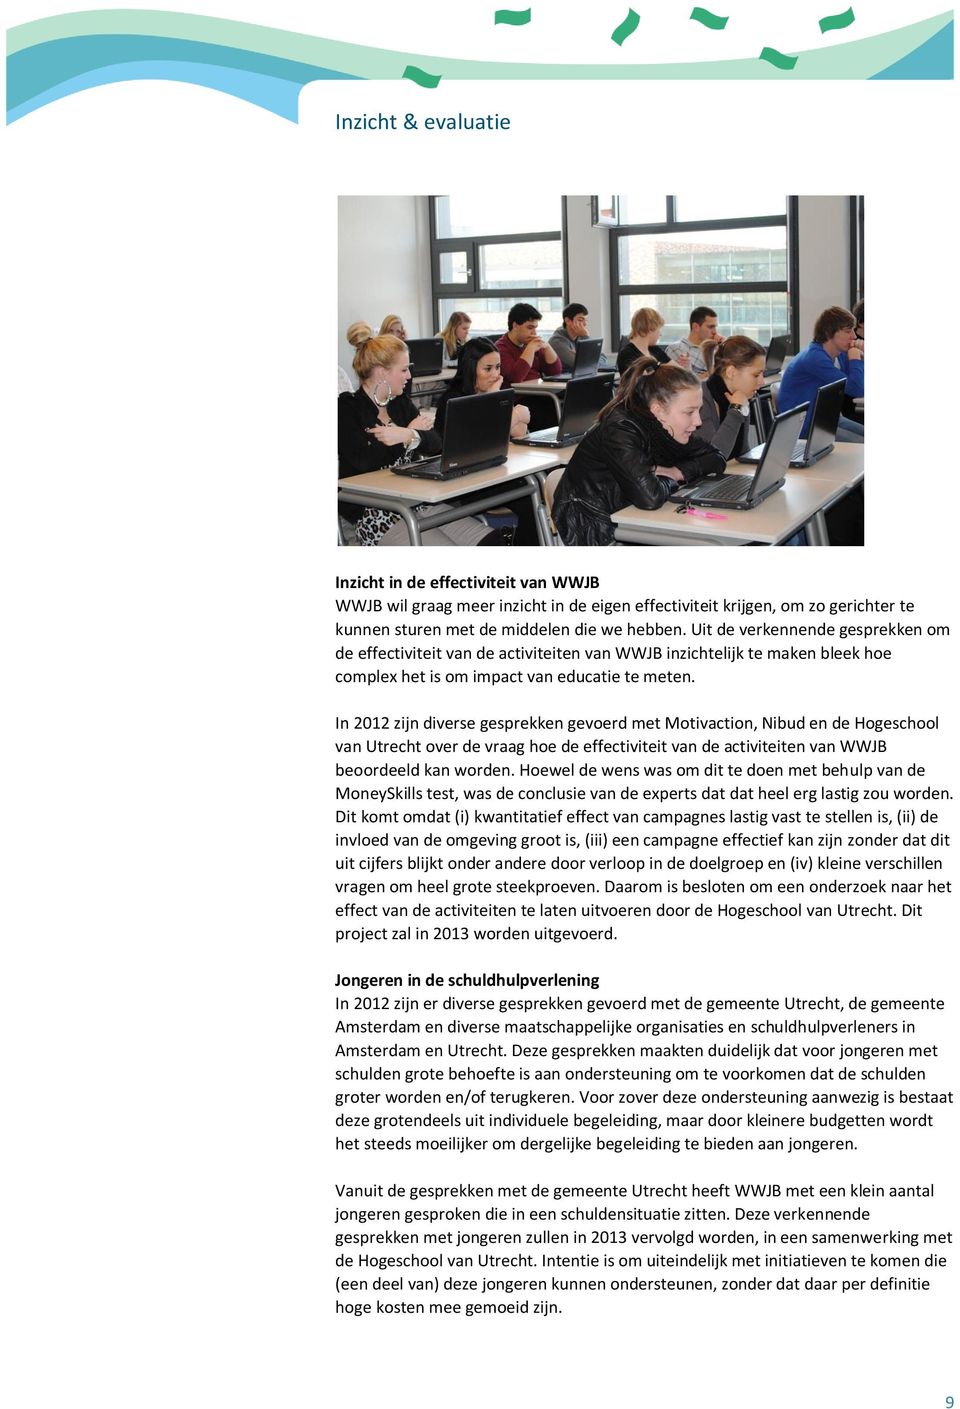 In 2012 zijn diverse gesprekken gevoerd met Motivaction, Nibud en de Hogeschool van Utrecht over de vraag hoe de effectiviteit van de activiteiten van WWJB beoordeeld kan worden.